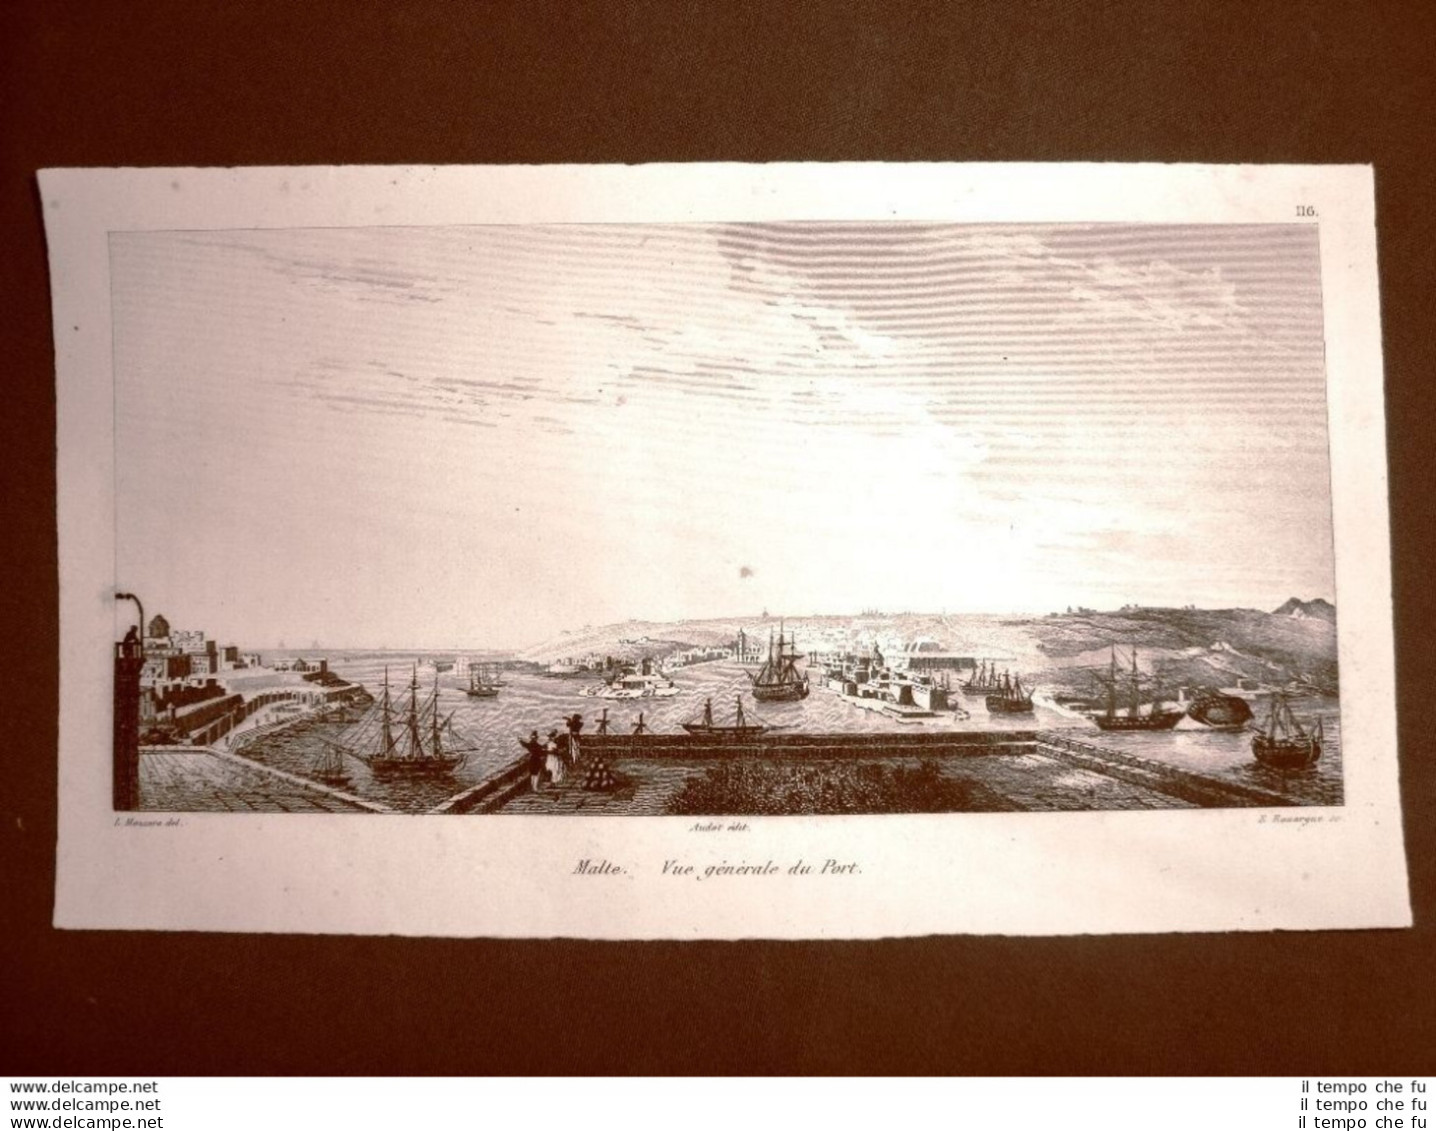 Malta Veduta Generale Del Porto Incisione All'acquaforte Del 1837 Audot Pomba - Ante 1900